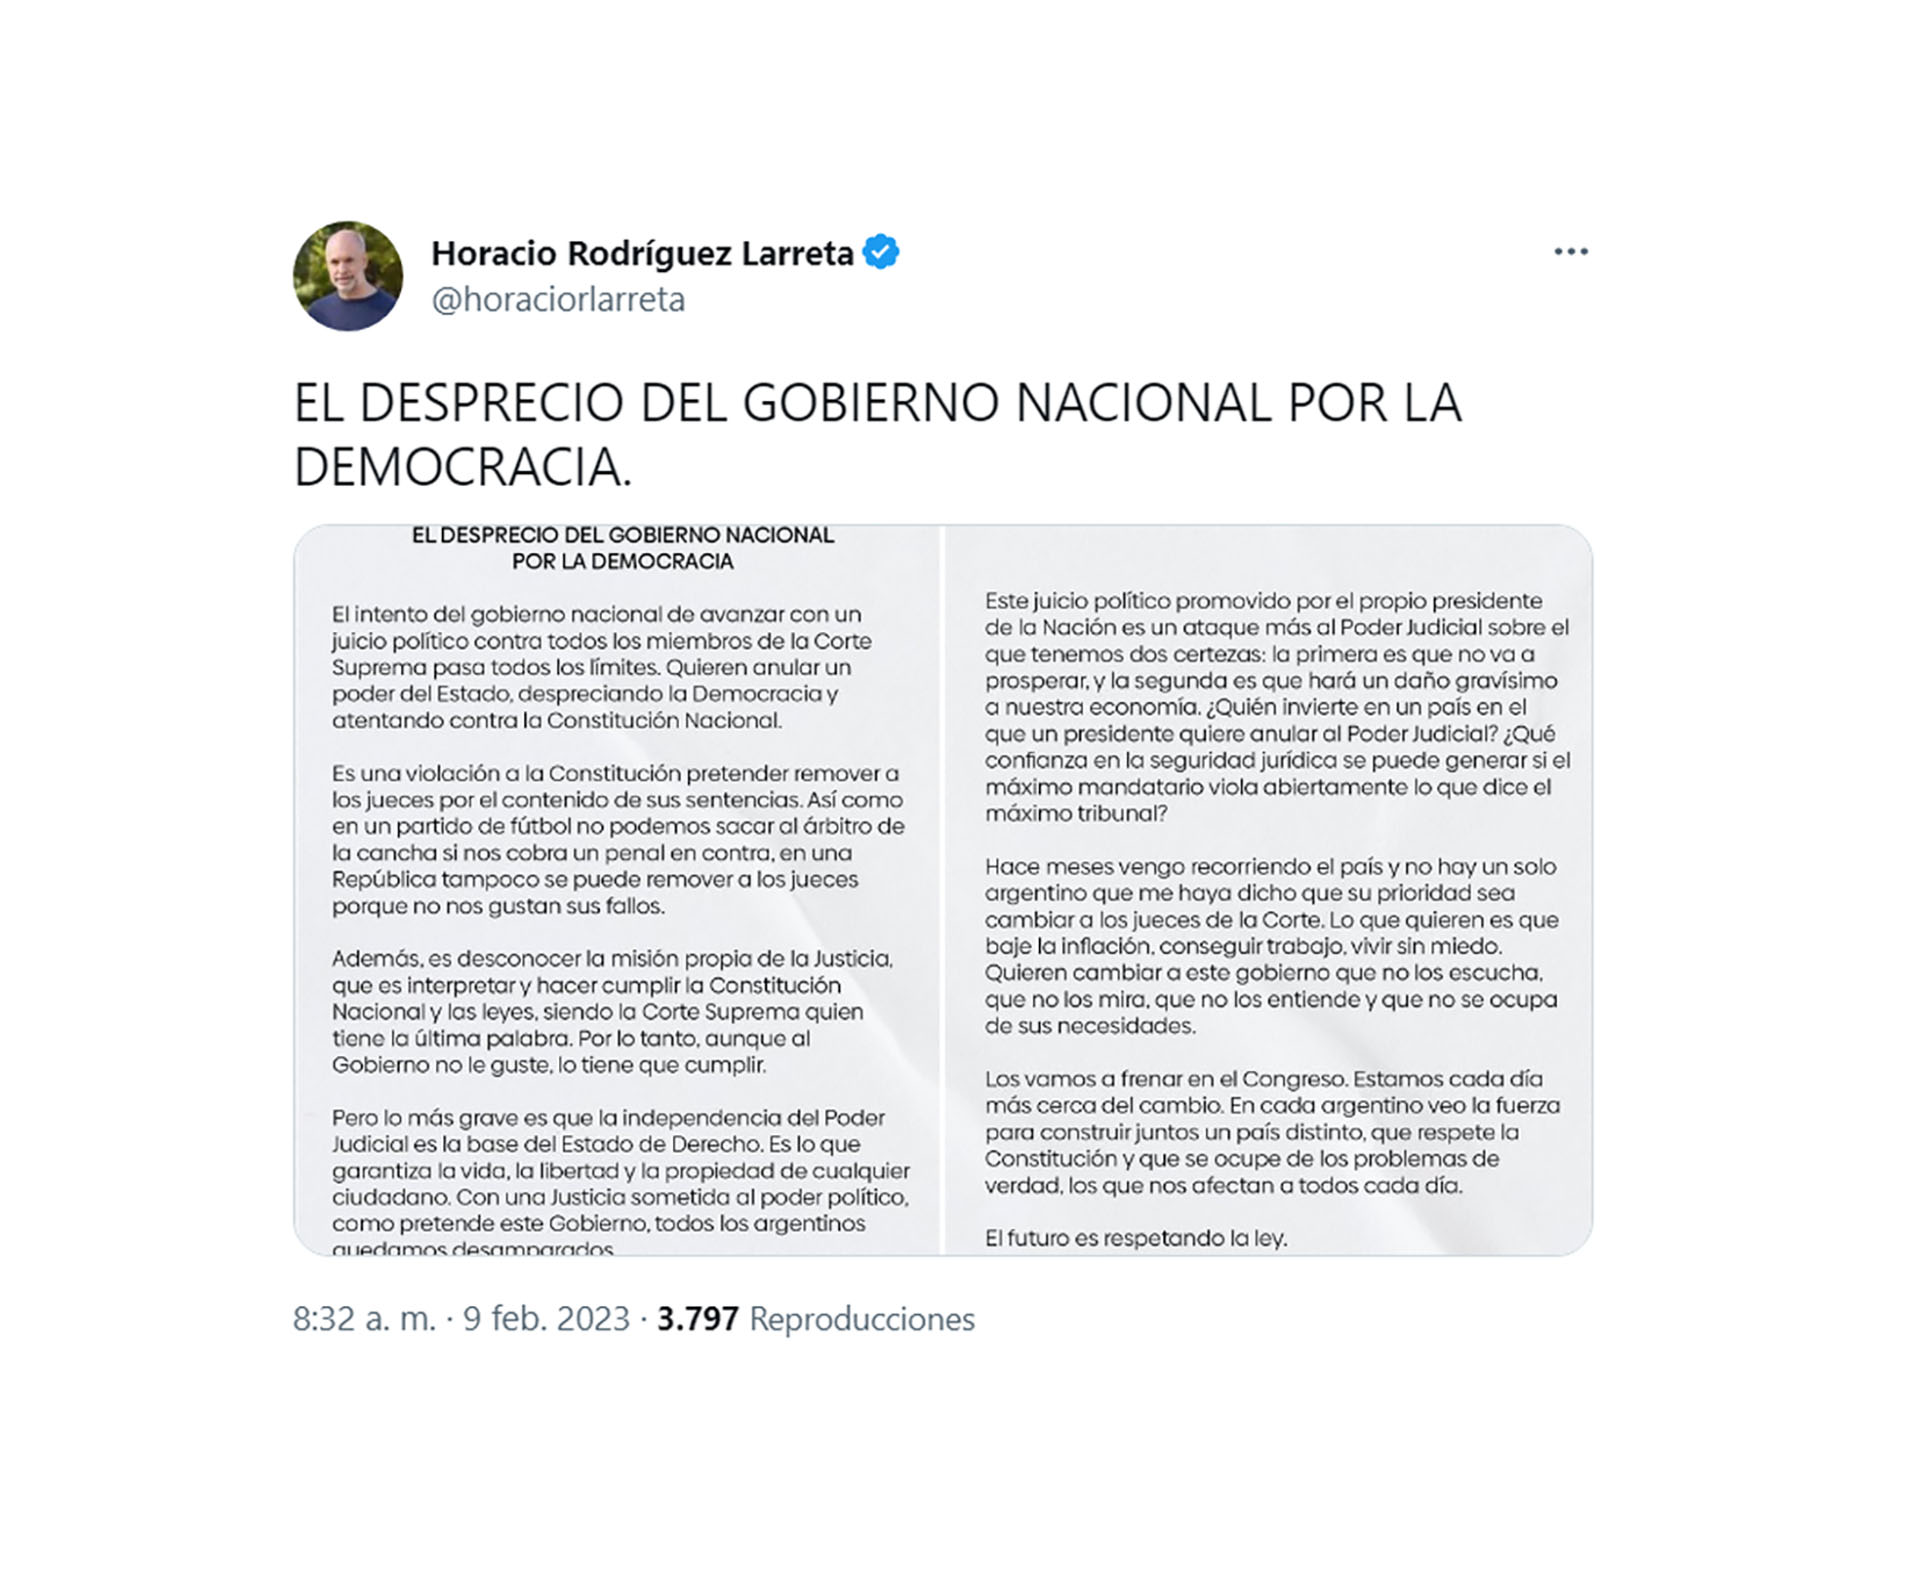 El mensaje de Horacio Rodríguez Larreta desde las redes sociales